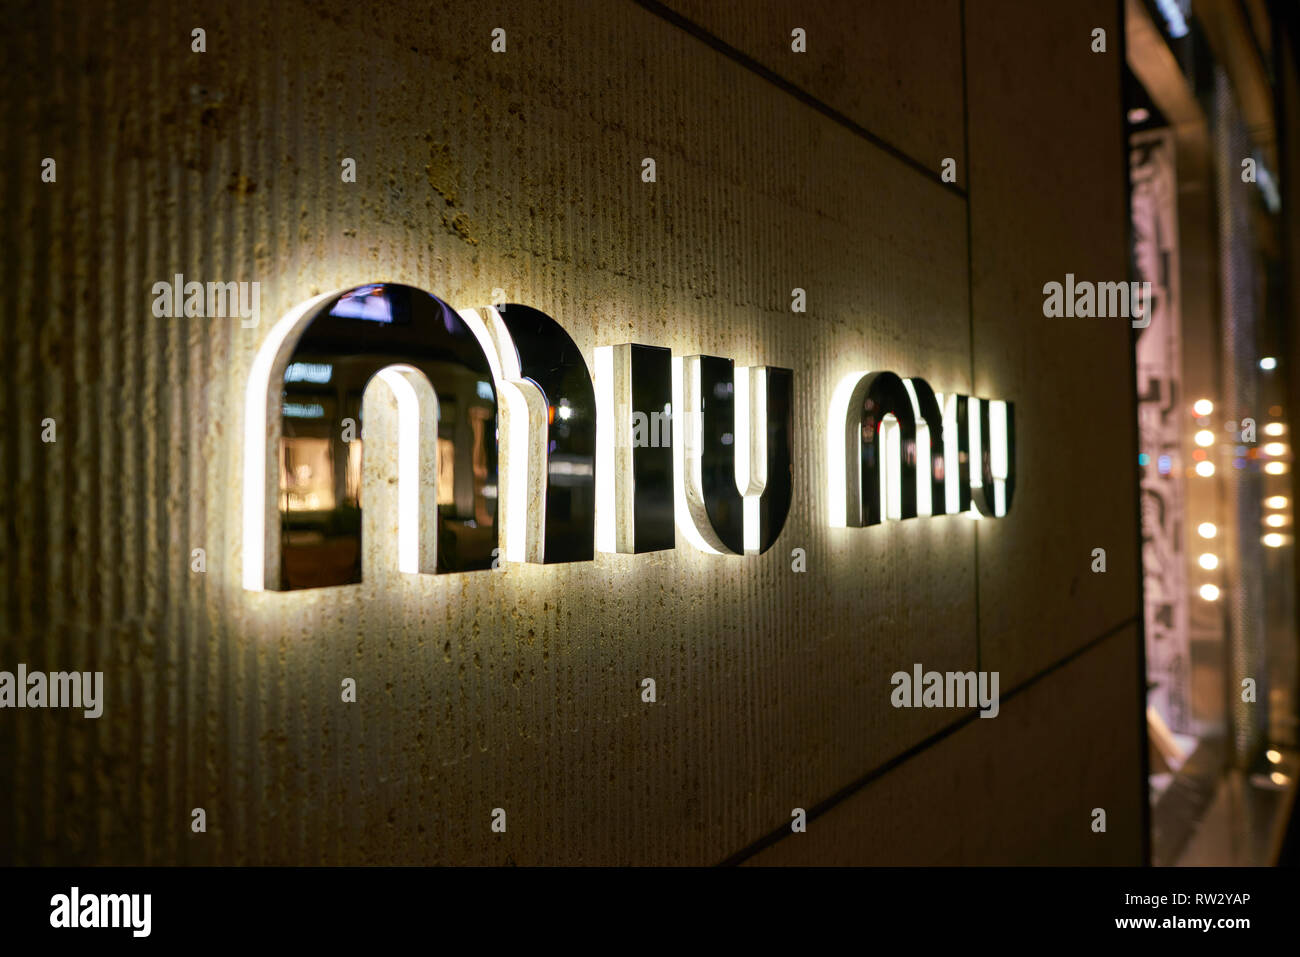 Miu miu logo hi-res stock photography and images - Alamy